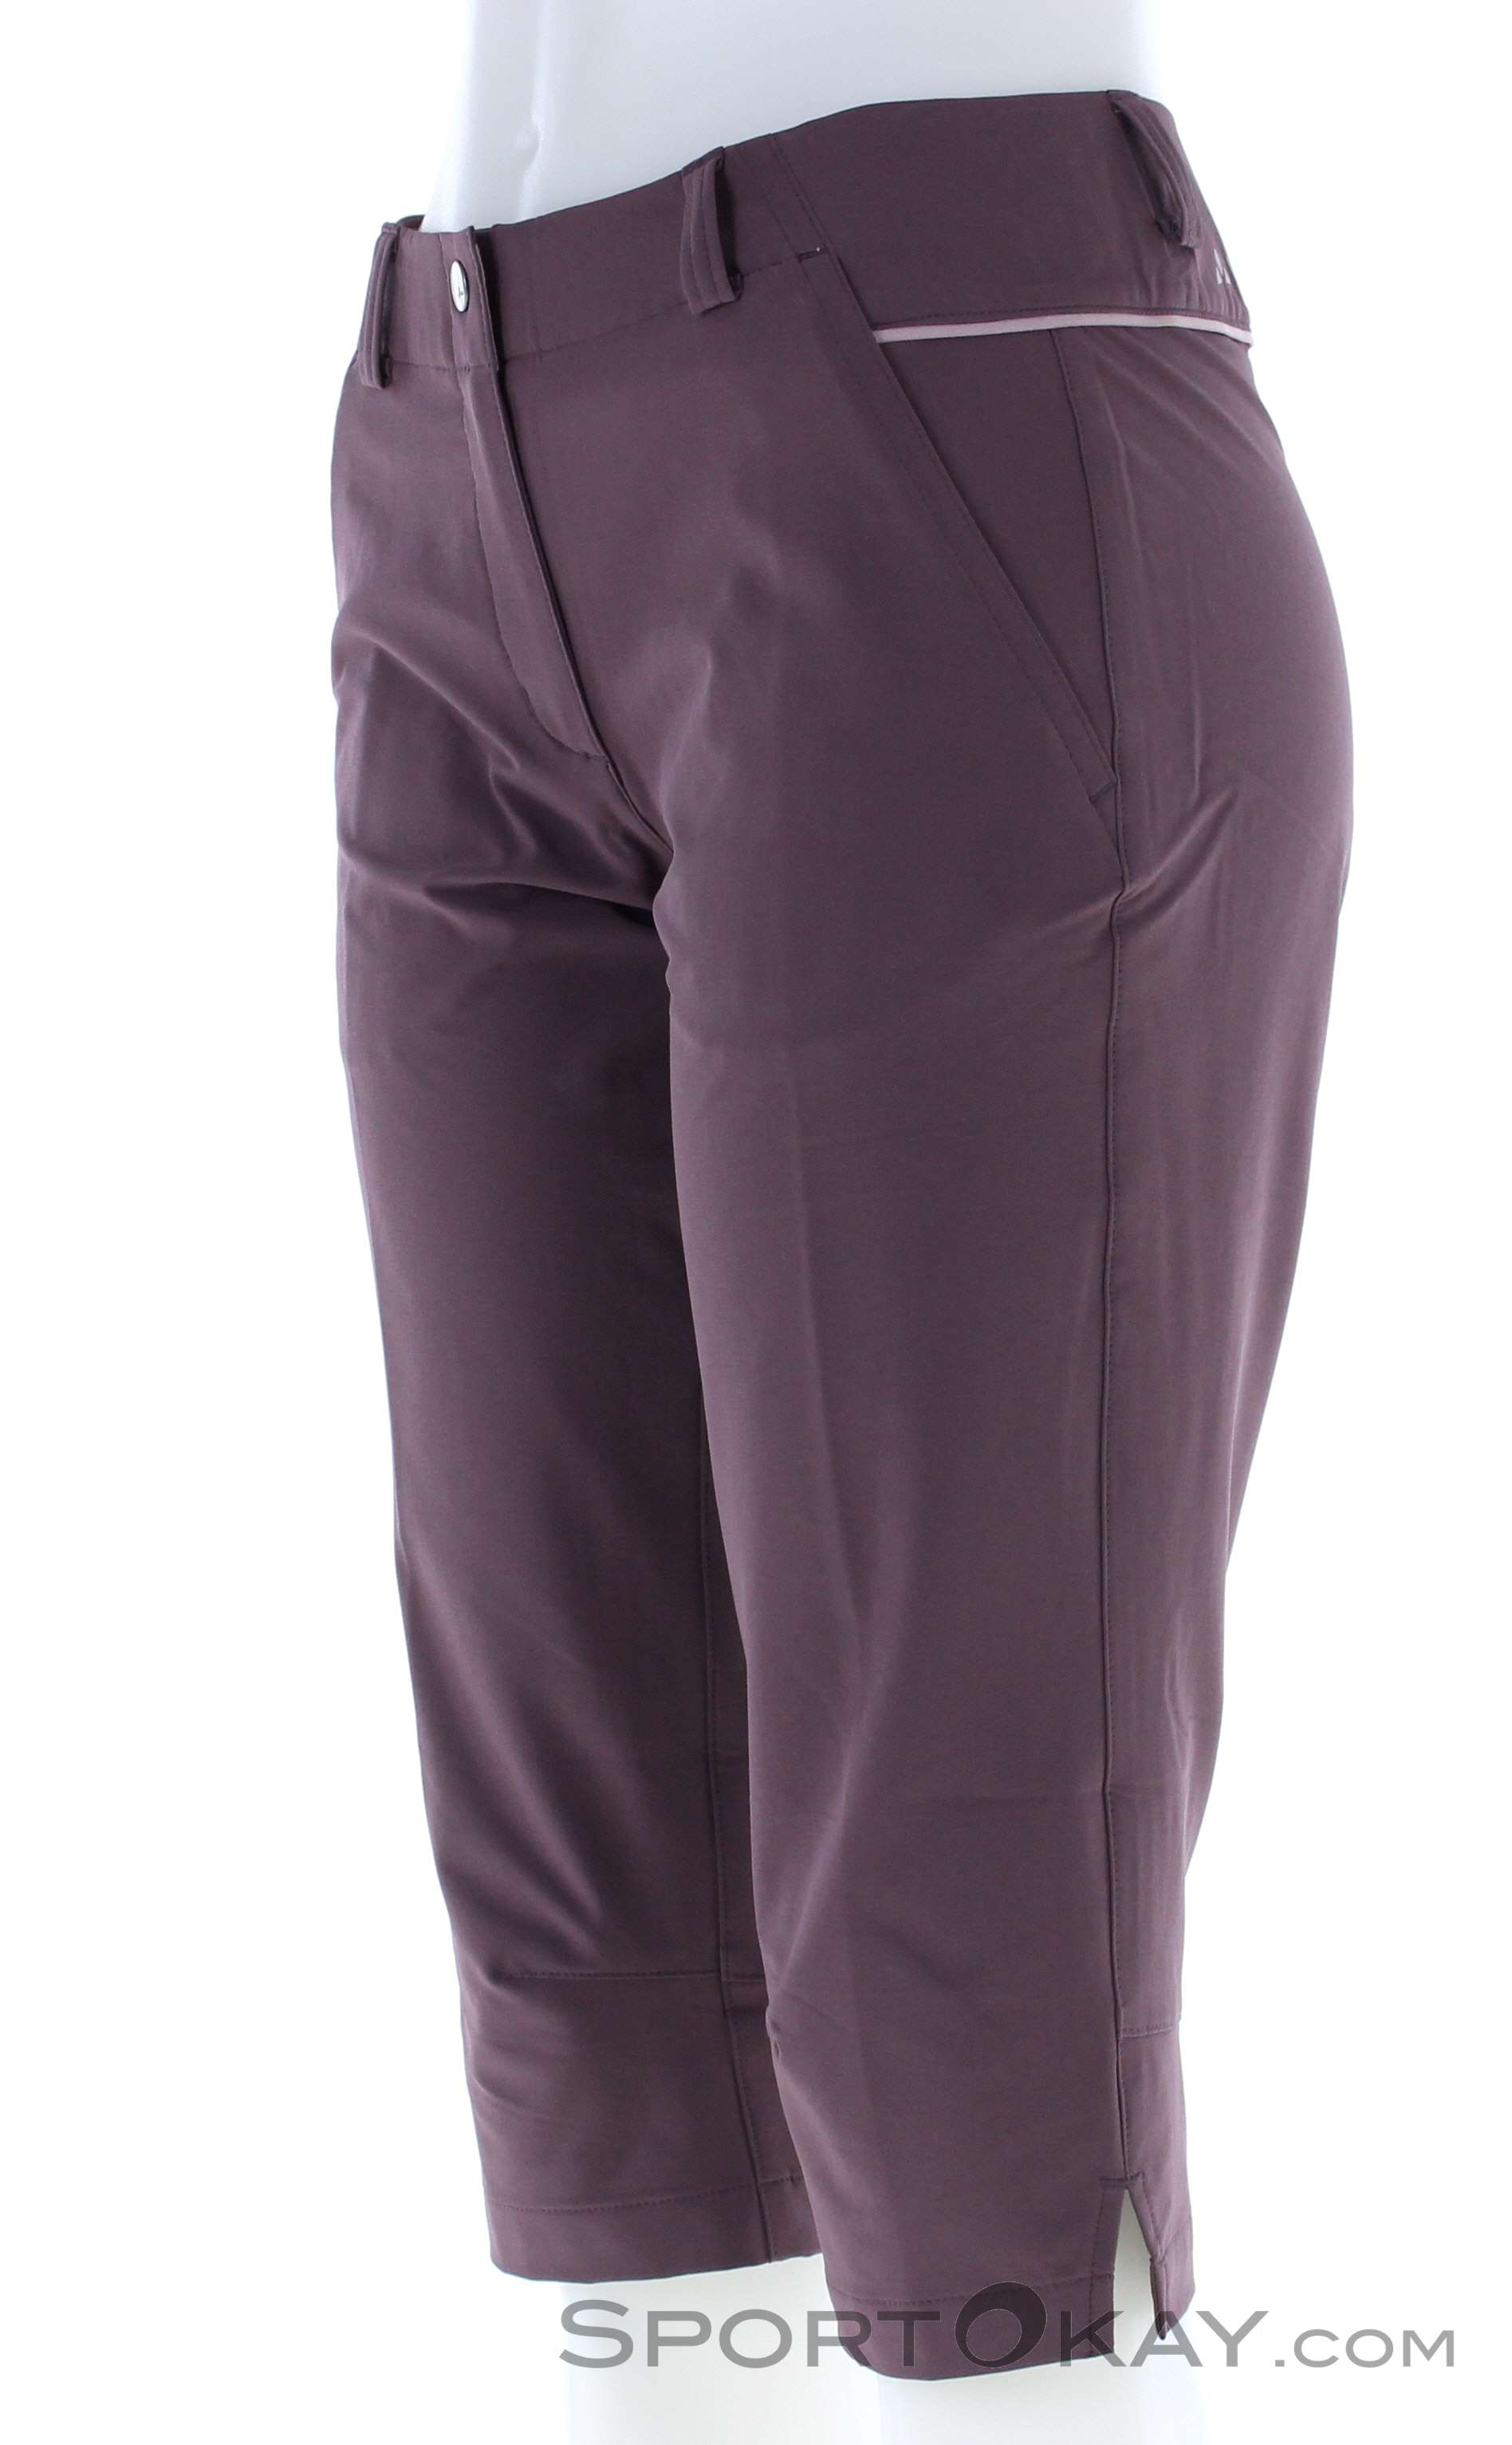 Vaude Skomer Outdoor Women - - Outdoor All Pants Pants - - Capri Outdoor Clothing